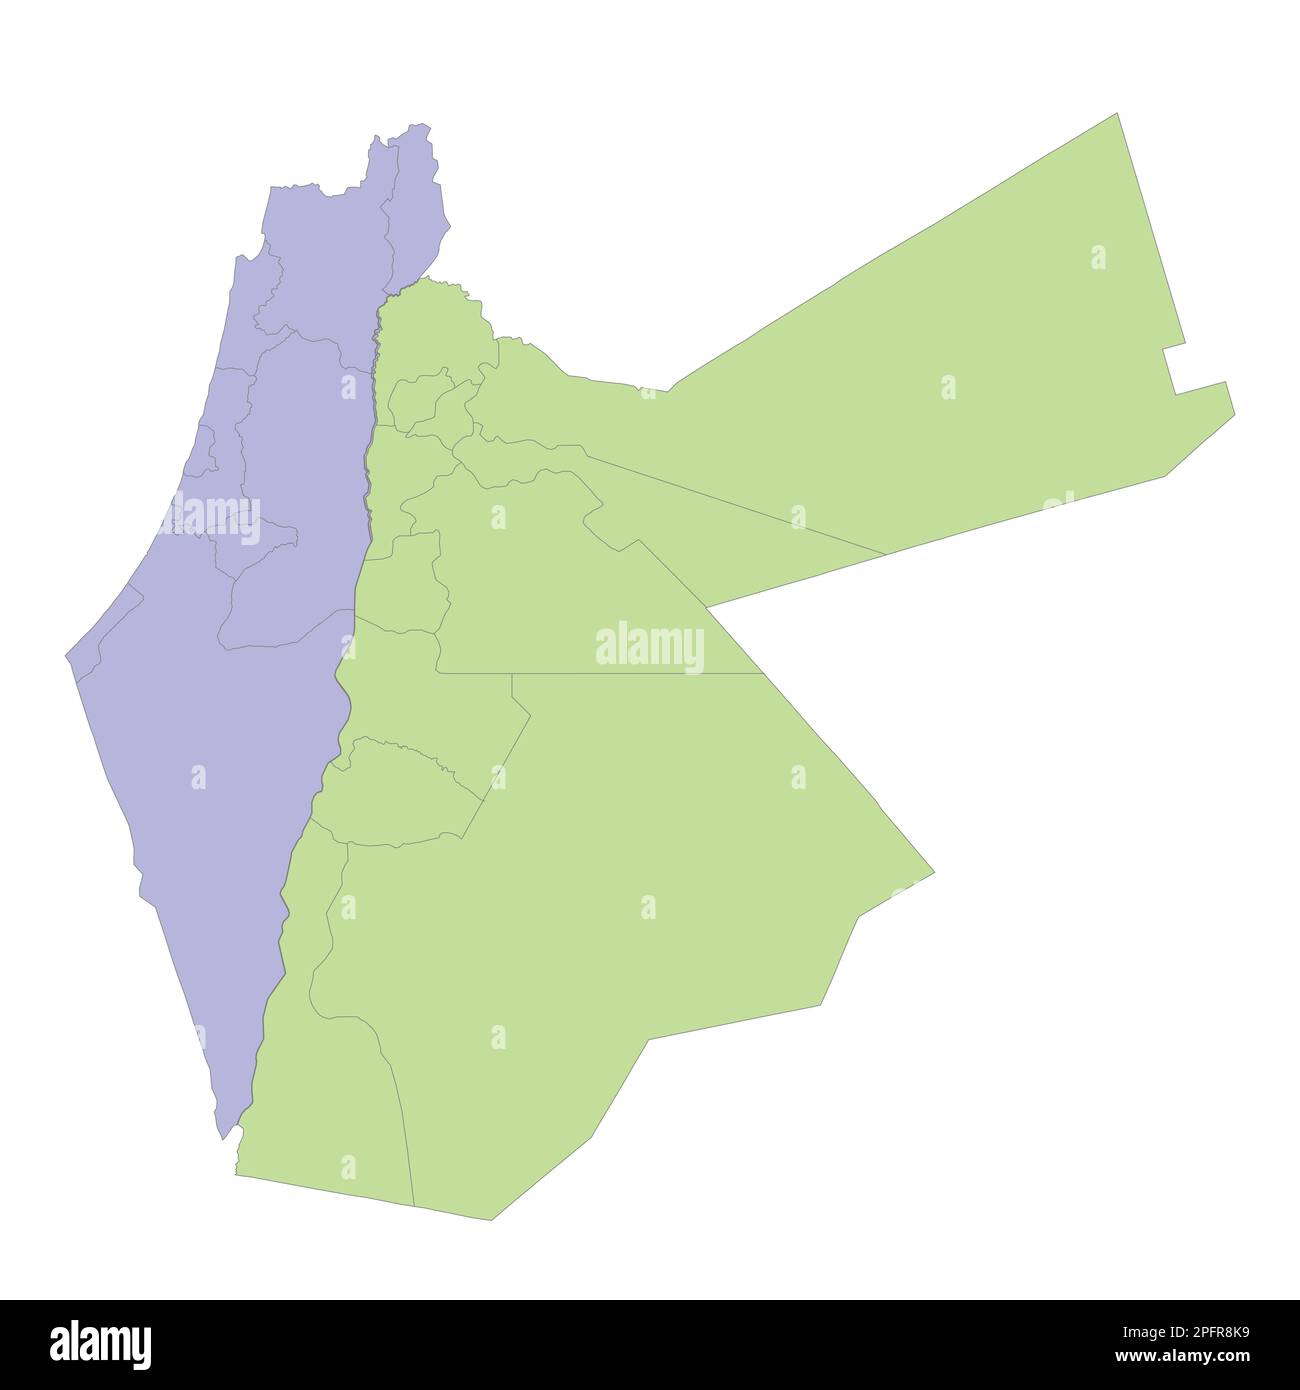 Mappa politica di alta qualità di Israele e Giordania con i confini delle regioni o province. Illustrazione vettoriale Illustrazione Vettoriale